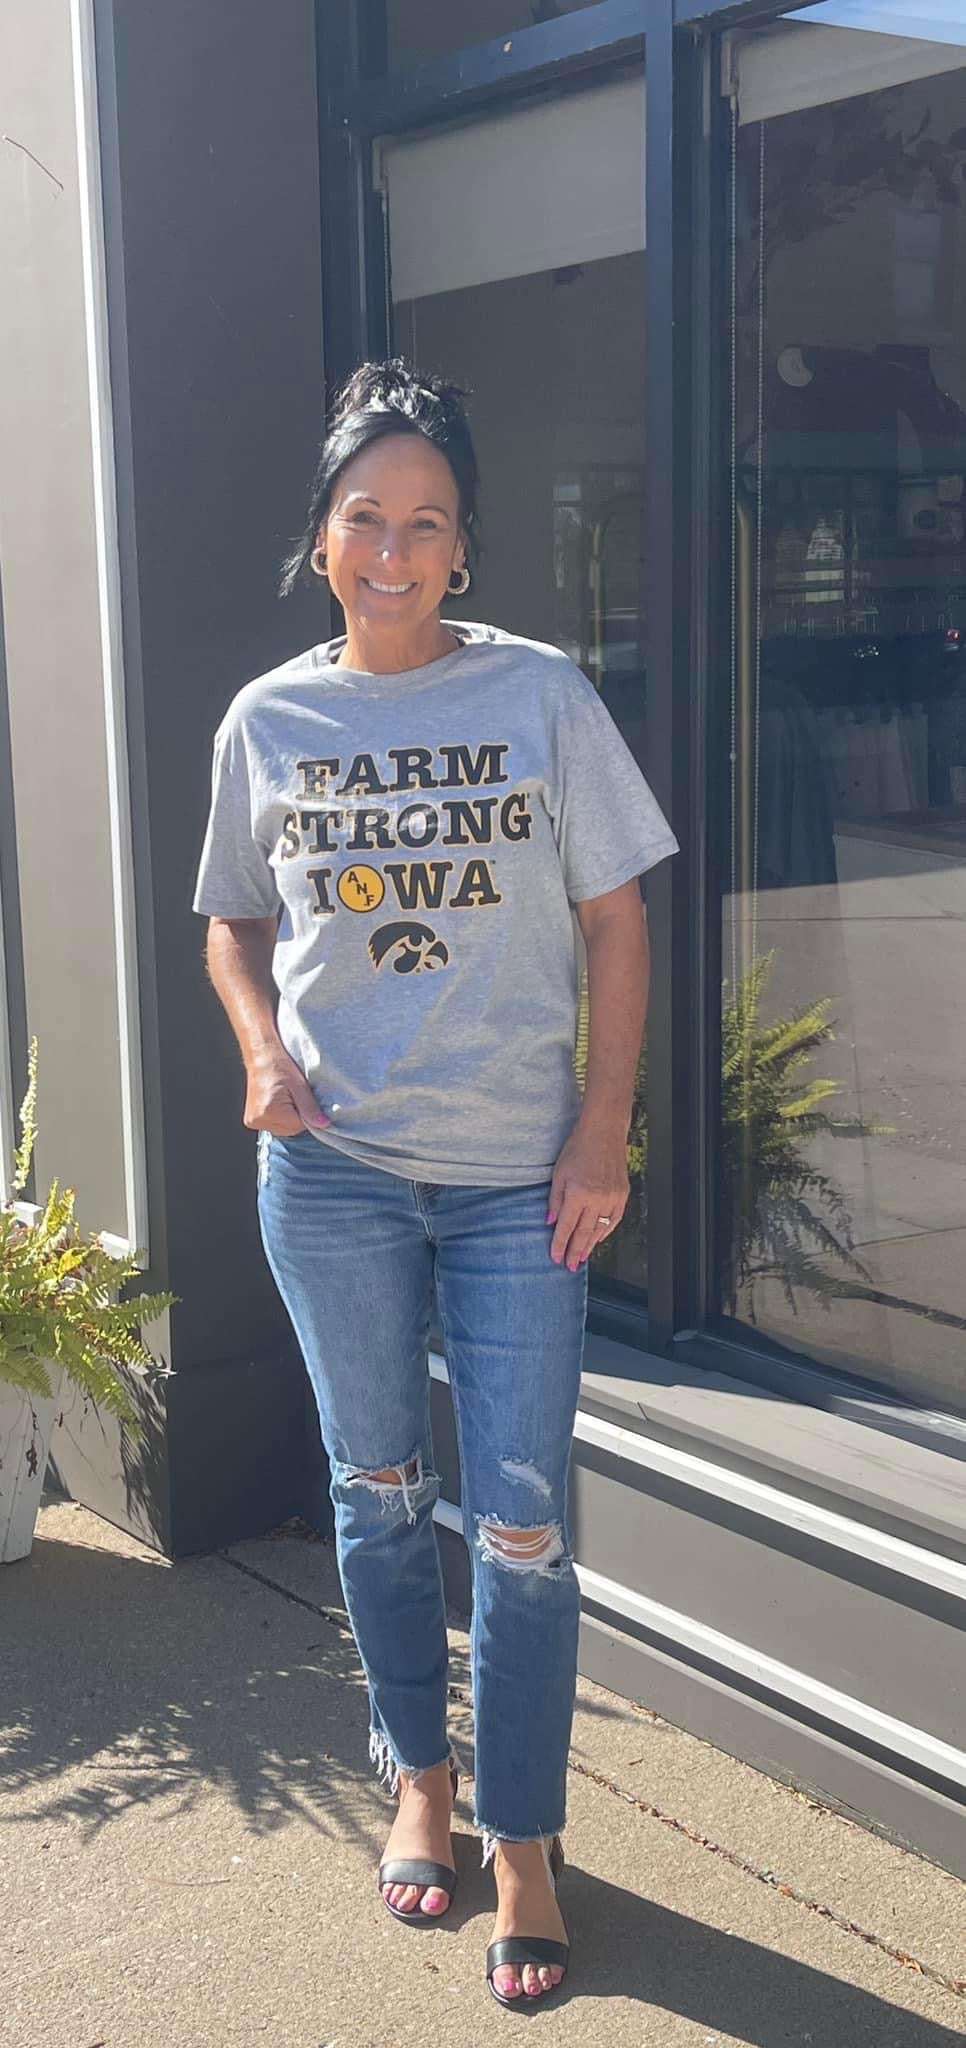 Farm Strong Iowa